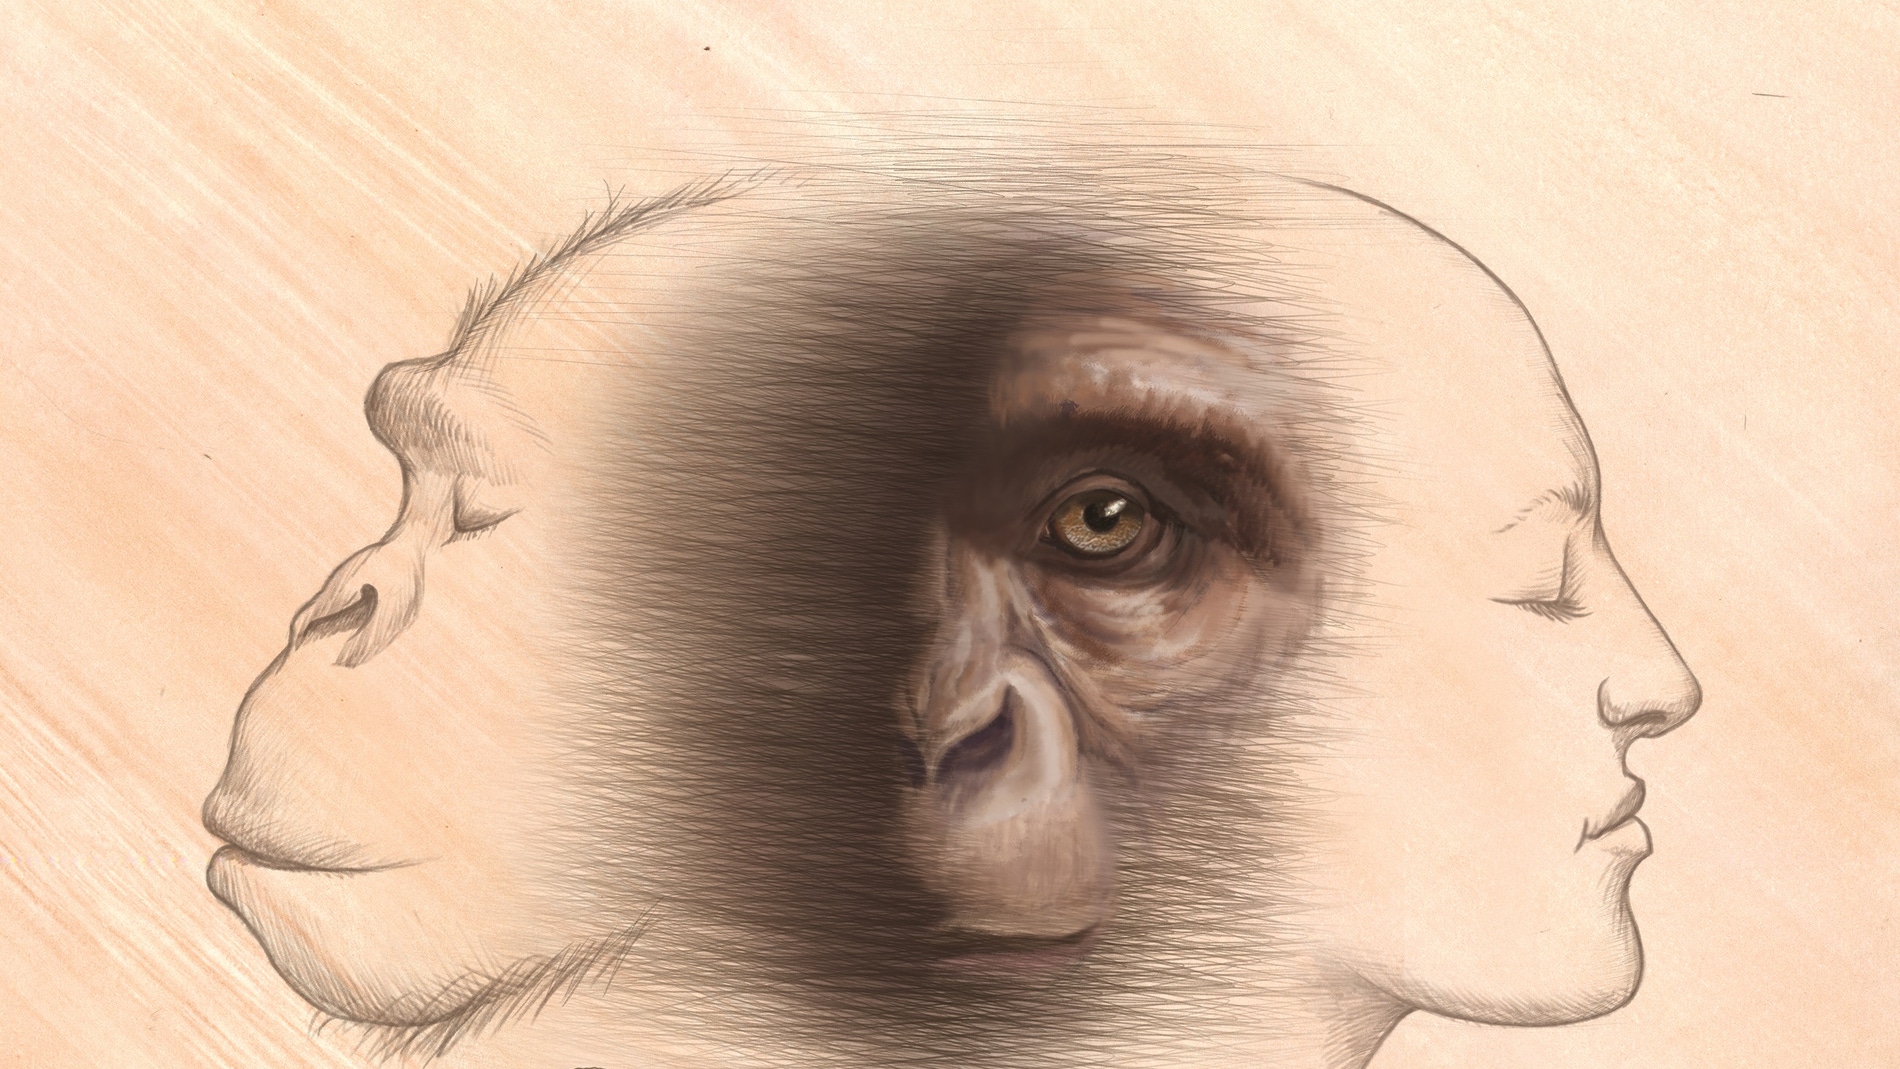 Chimpances y humanos comparten un ancestro comun que vivio a finales del Mioceno